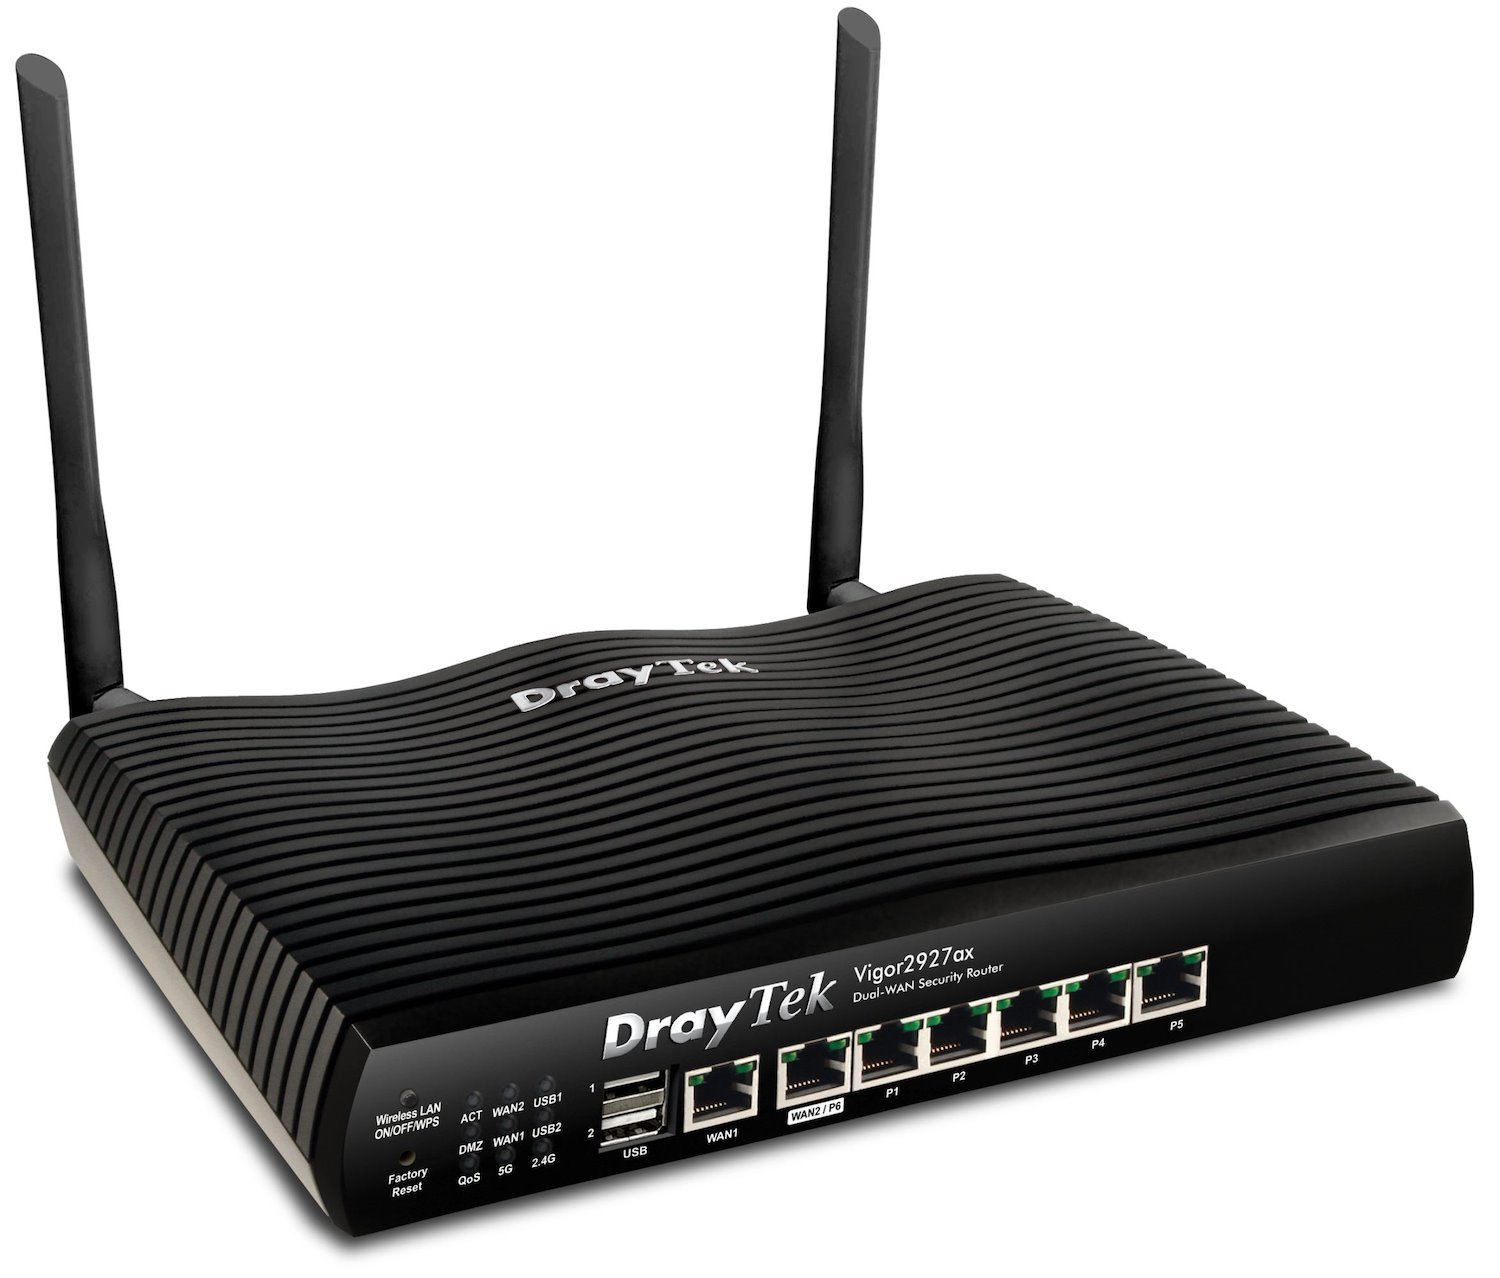 Draytek Vigor 2927Ax Wireless Router Gigabit Ethernet Dual-Band [2.4 GHz / 5 GHz] Black (Draytek Vigor 2927Ax-K Router)